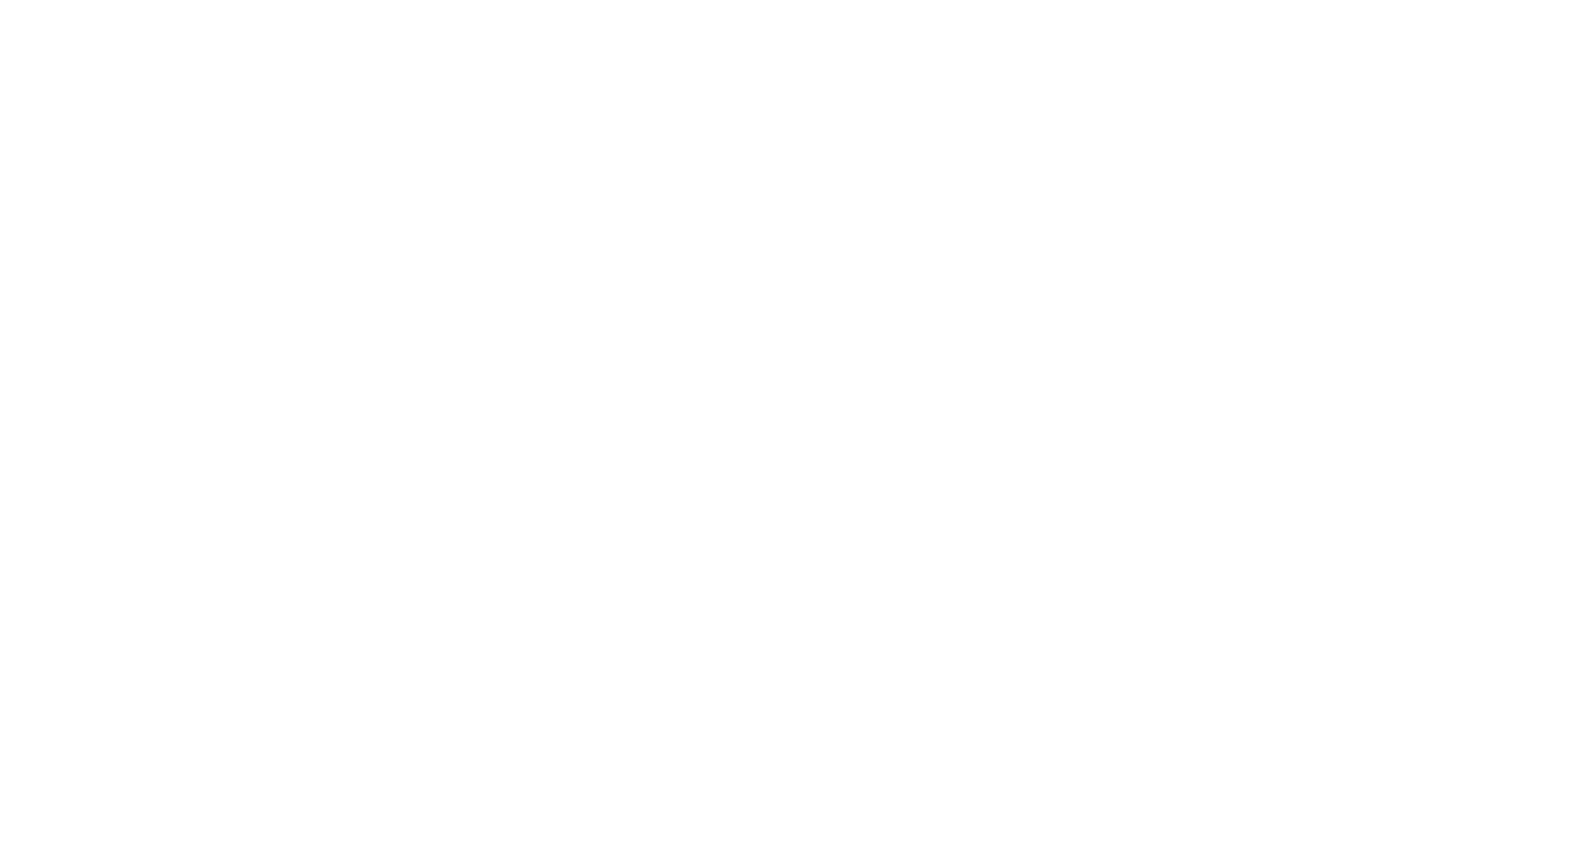 East Japan Railway logo for dark backgrounds (transparent PNG)